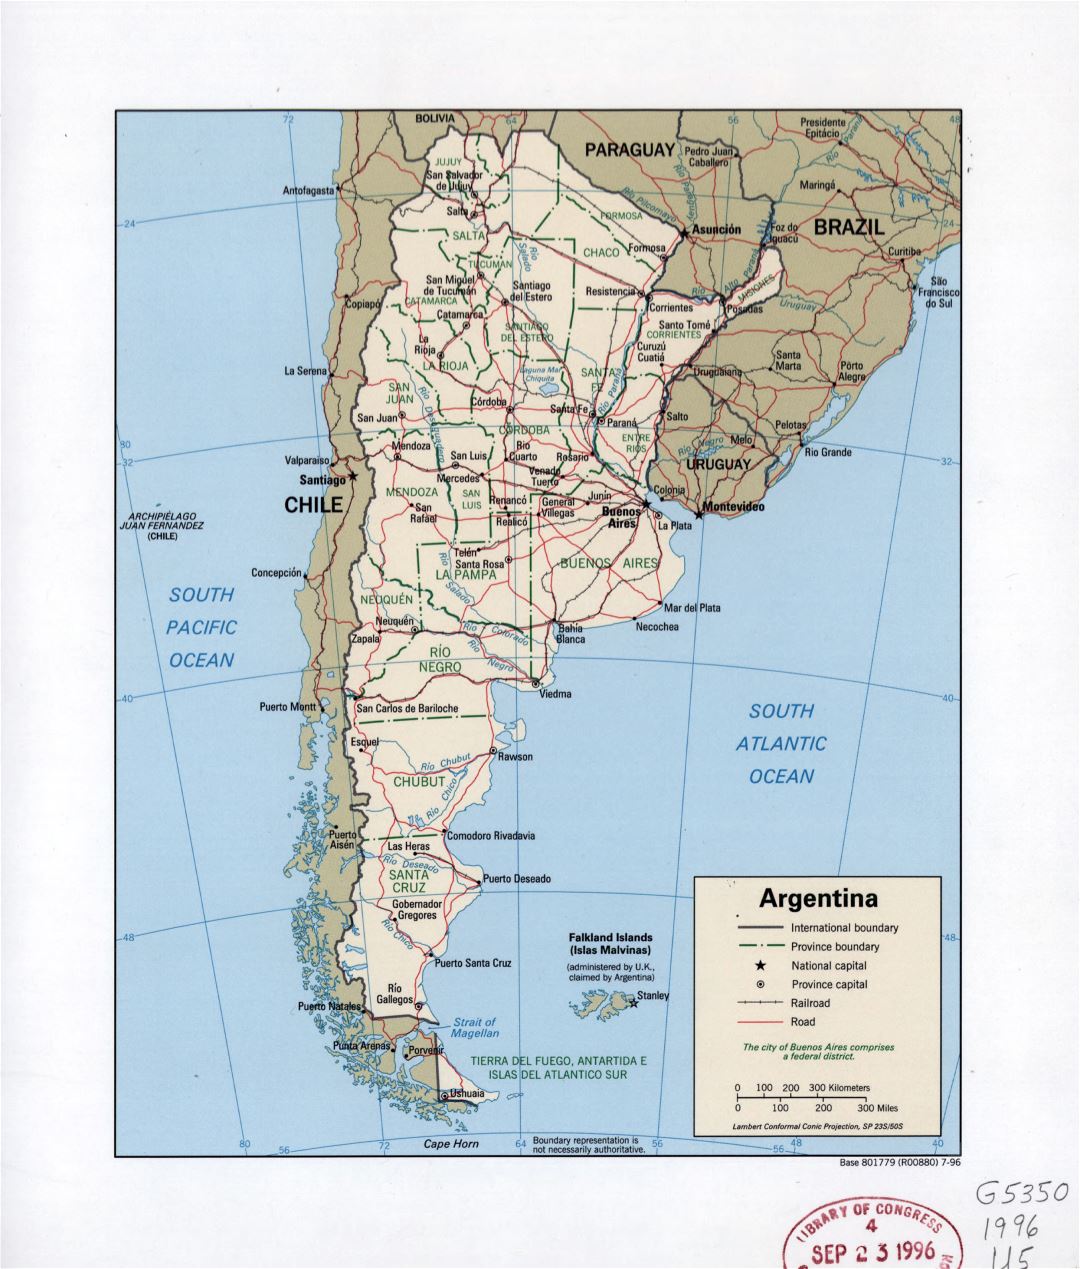 Grande detalado mapa político y administrativo de Argentina con carreteras, ferrocarriles, ciudades y principales ciudades - 1996